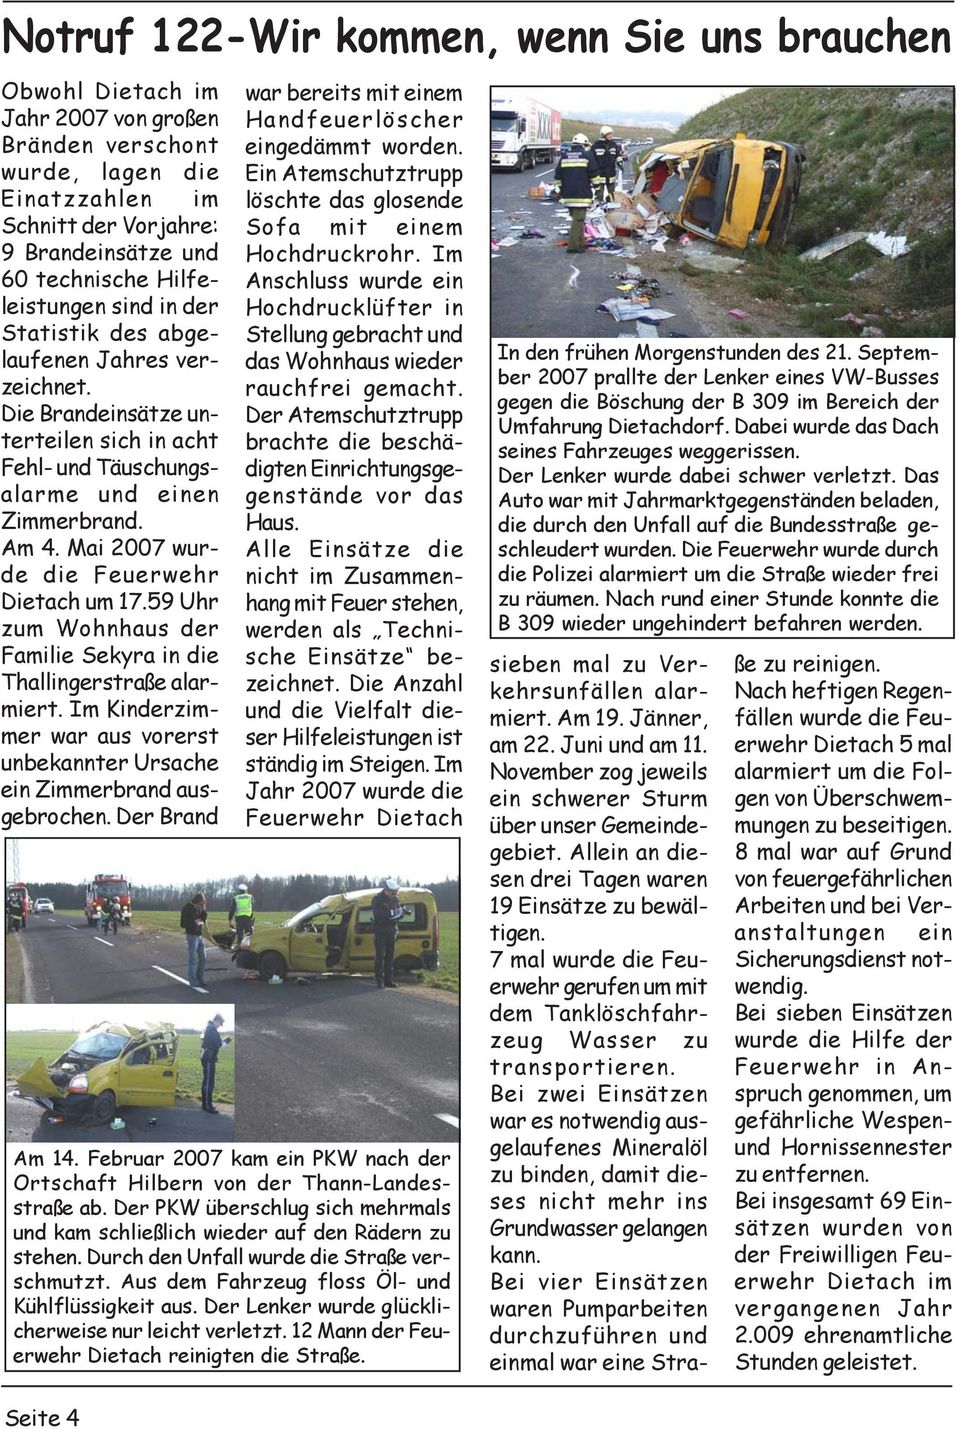 Mai 2007 wurde die Feuerwehr Dietach um 17.59 Uhr zum Wohnhaus der Familie Sekyra die Thallgerstraße alarmiert. Im Kderzimmer war aus vorerst unbekannter Ursache e Zimmerbrand ausgebrochen.